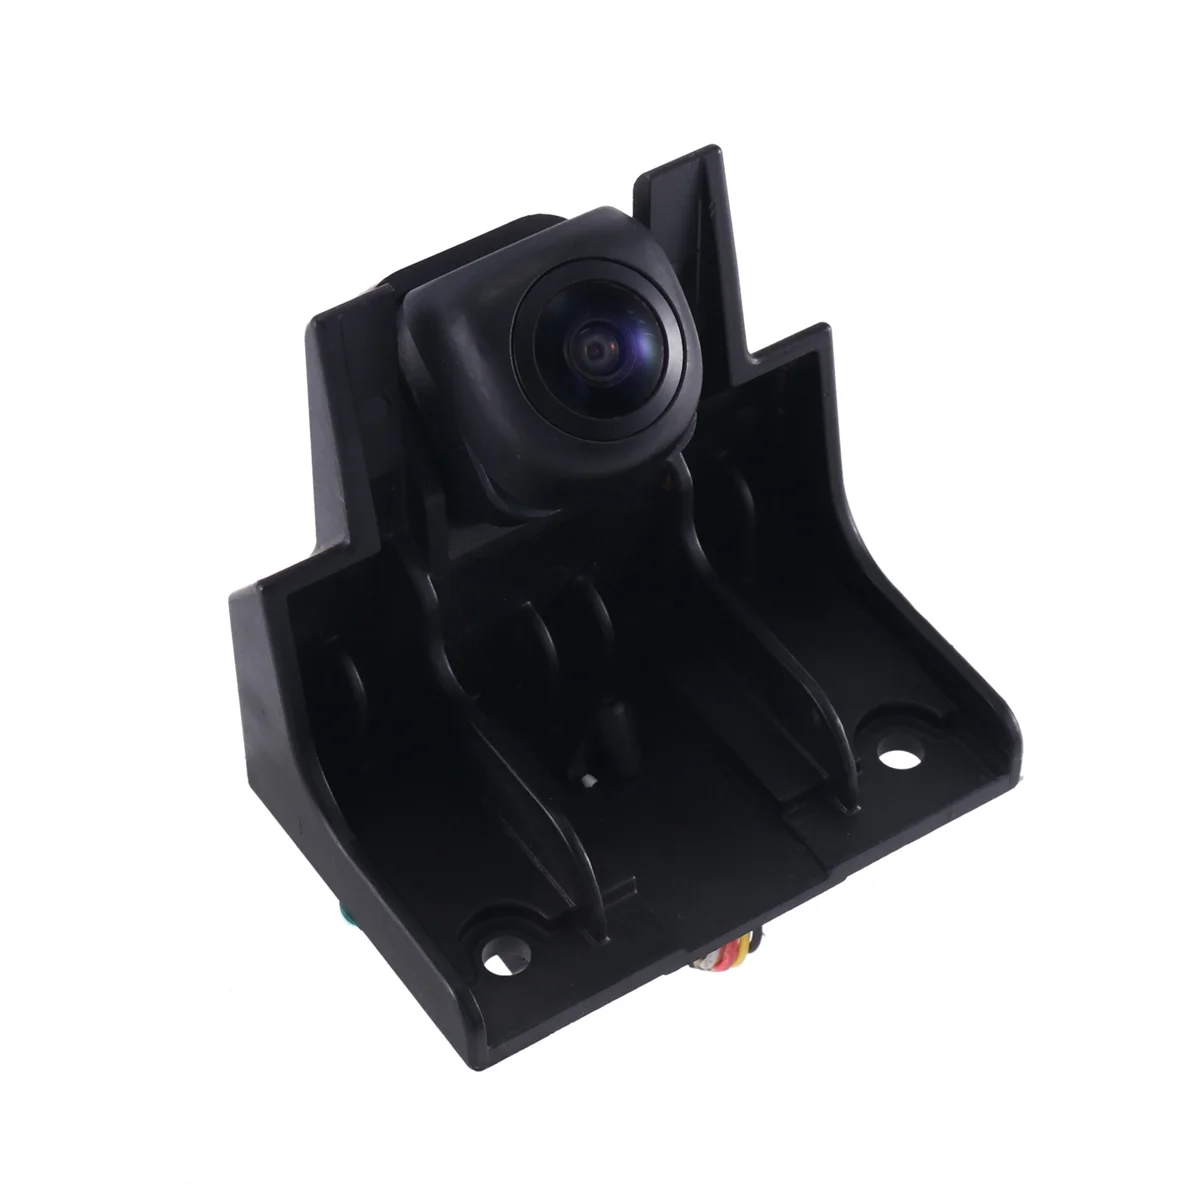 95760-J3000 Нова камера за задно виждане Задна камера Асистент за паркиране Резервна камера за Hyundai Veloster 2019-2021